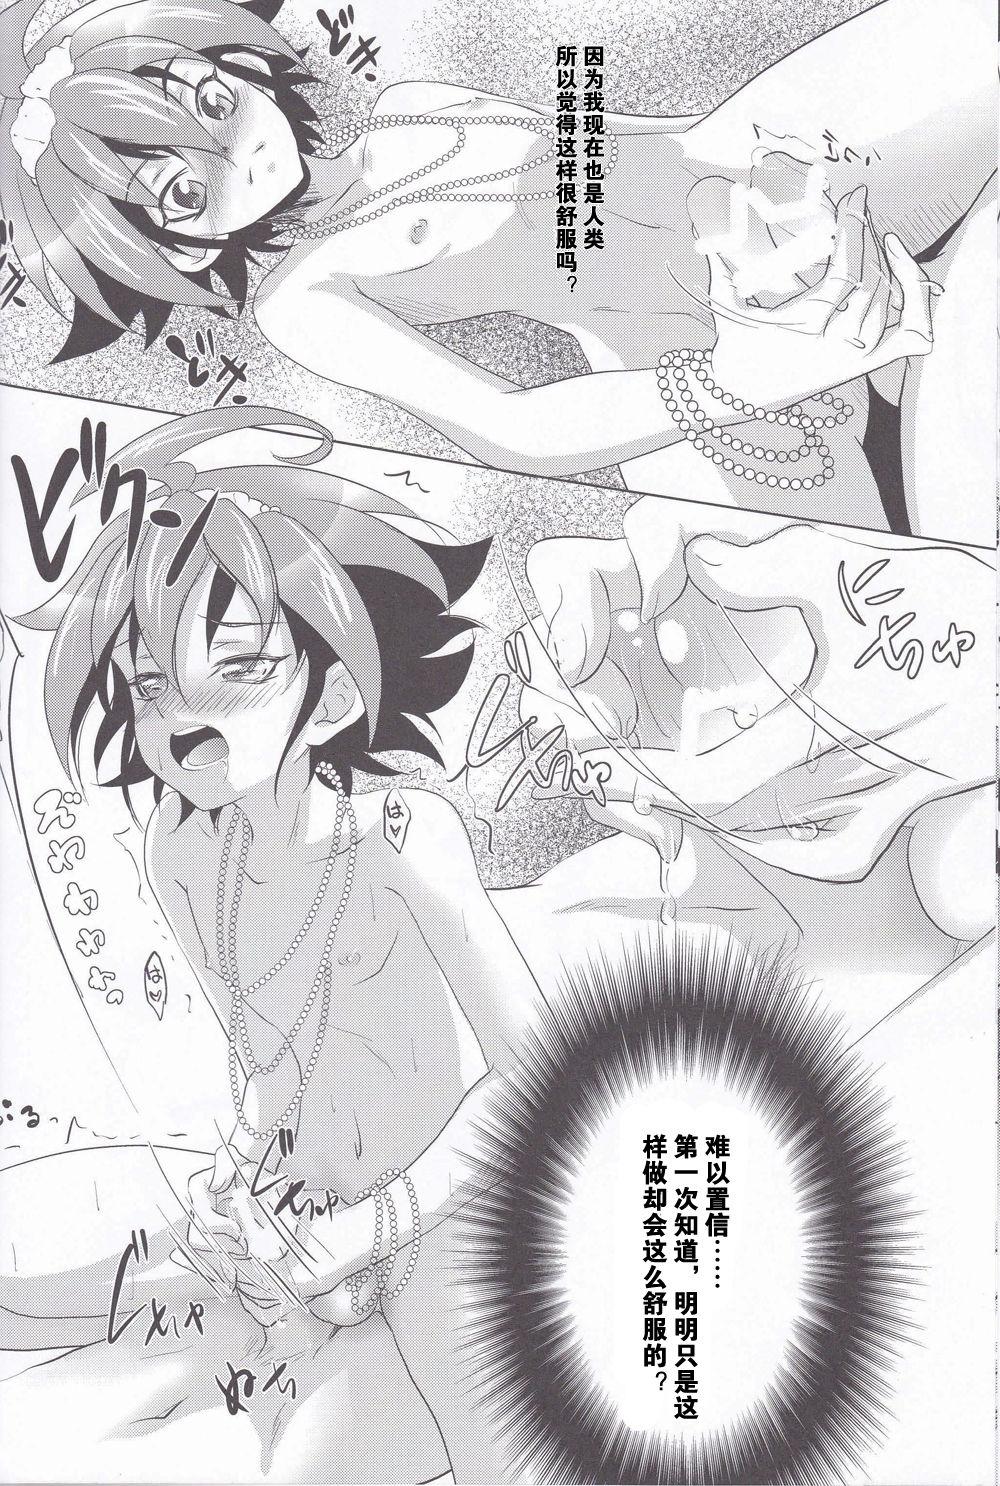 Cavala Mermaid Memory - Yu gi oh arc v Teenpussy - Page 9